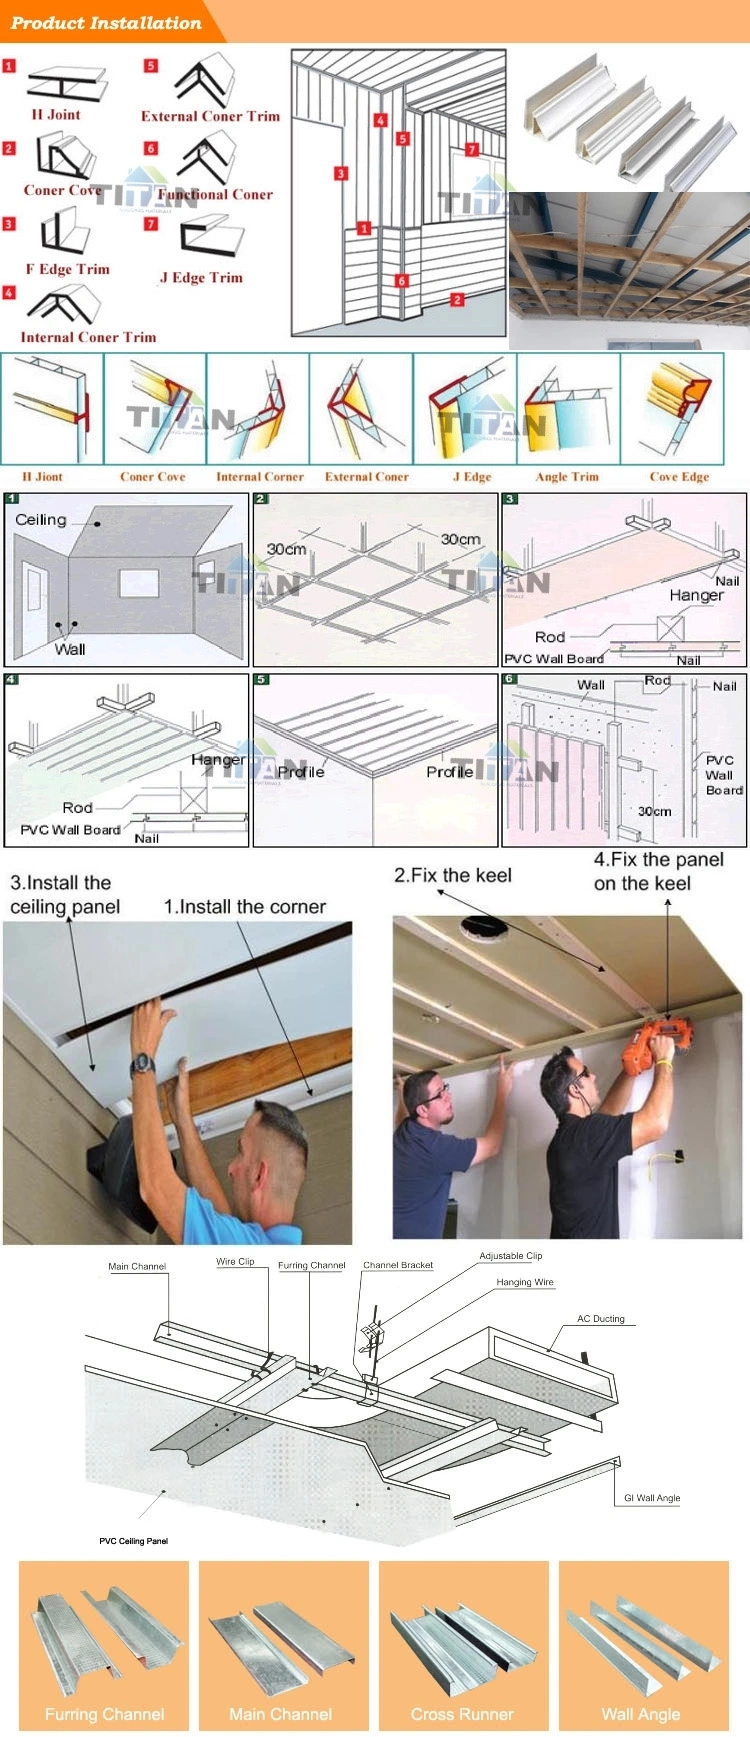 20-30cm Width PVC Wall Ceiling Panel PVC Wall Panel Plastic Bathroom Wall Cladding PVC Panel